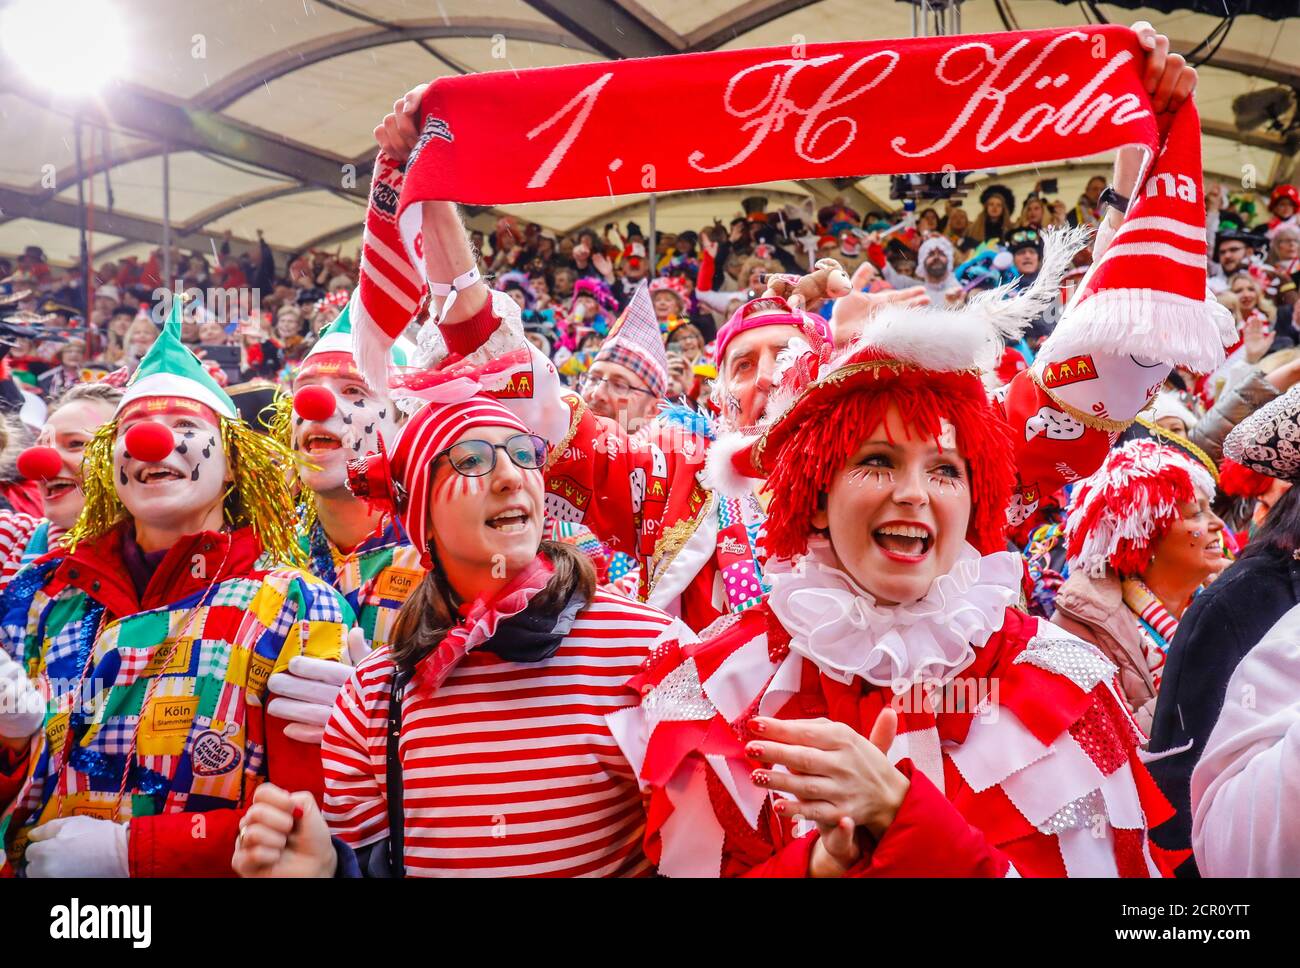 Los carnívoros coloridos y disfrazados celebran el Carnaval en Colonia, en Weiberfastnacht el carnaval callejero se abre tradicionalmente en el Alter Markt, que Foto de stock